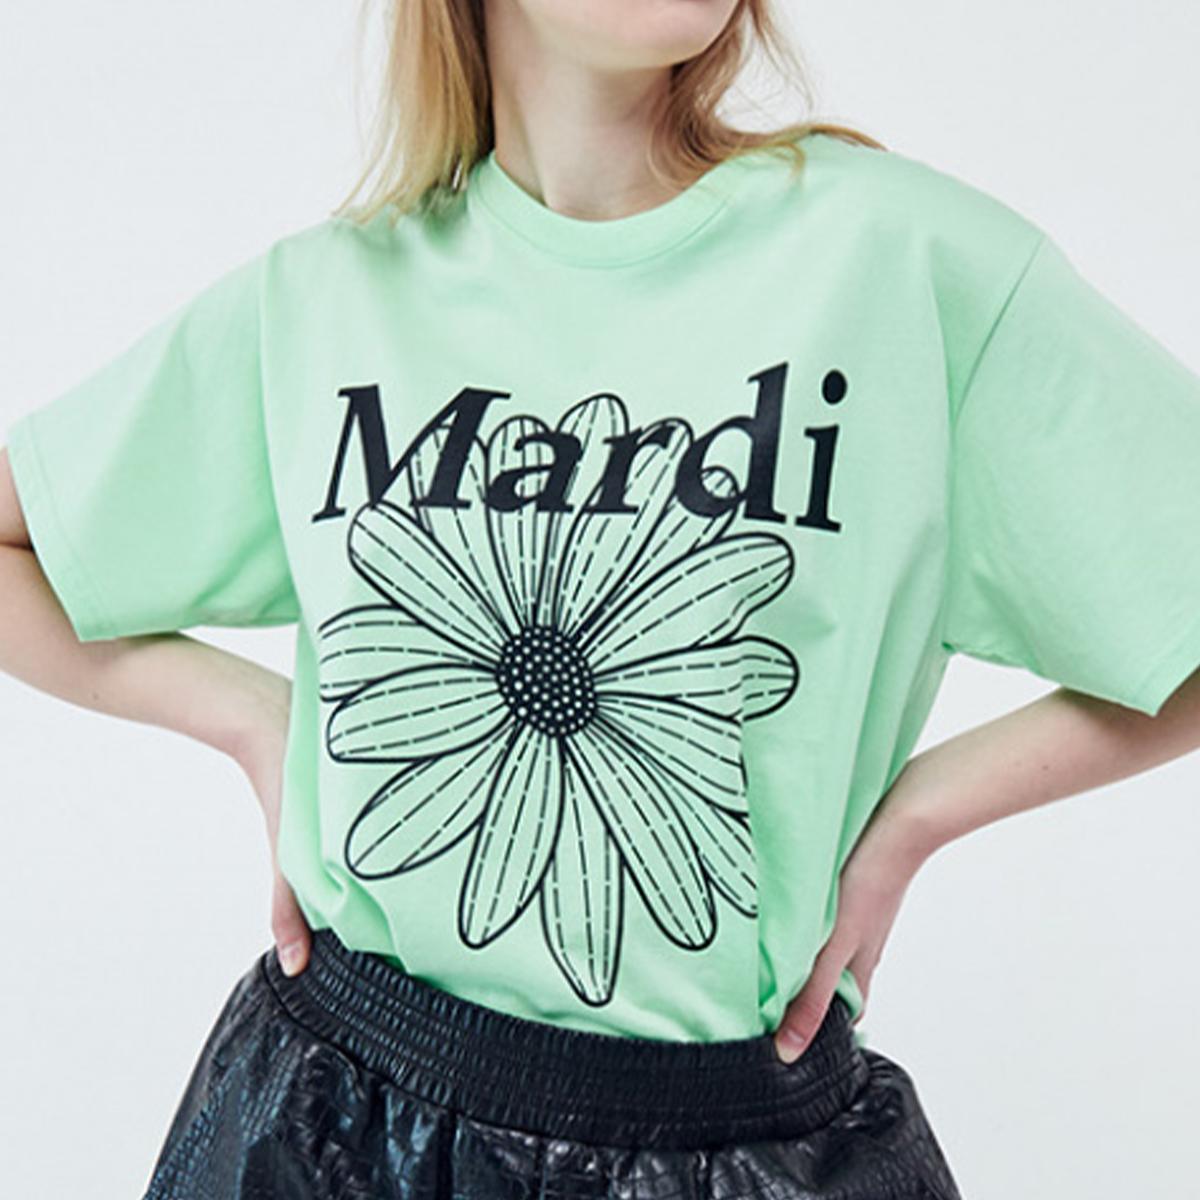 Flowermardi T-shirt (Mint Black)